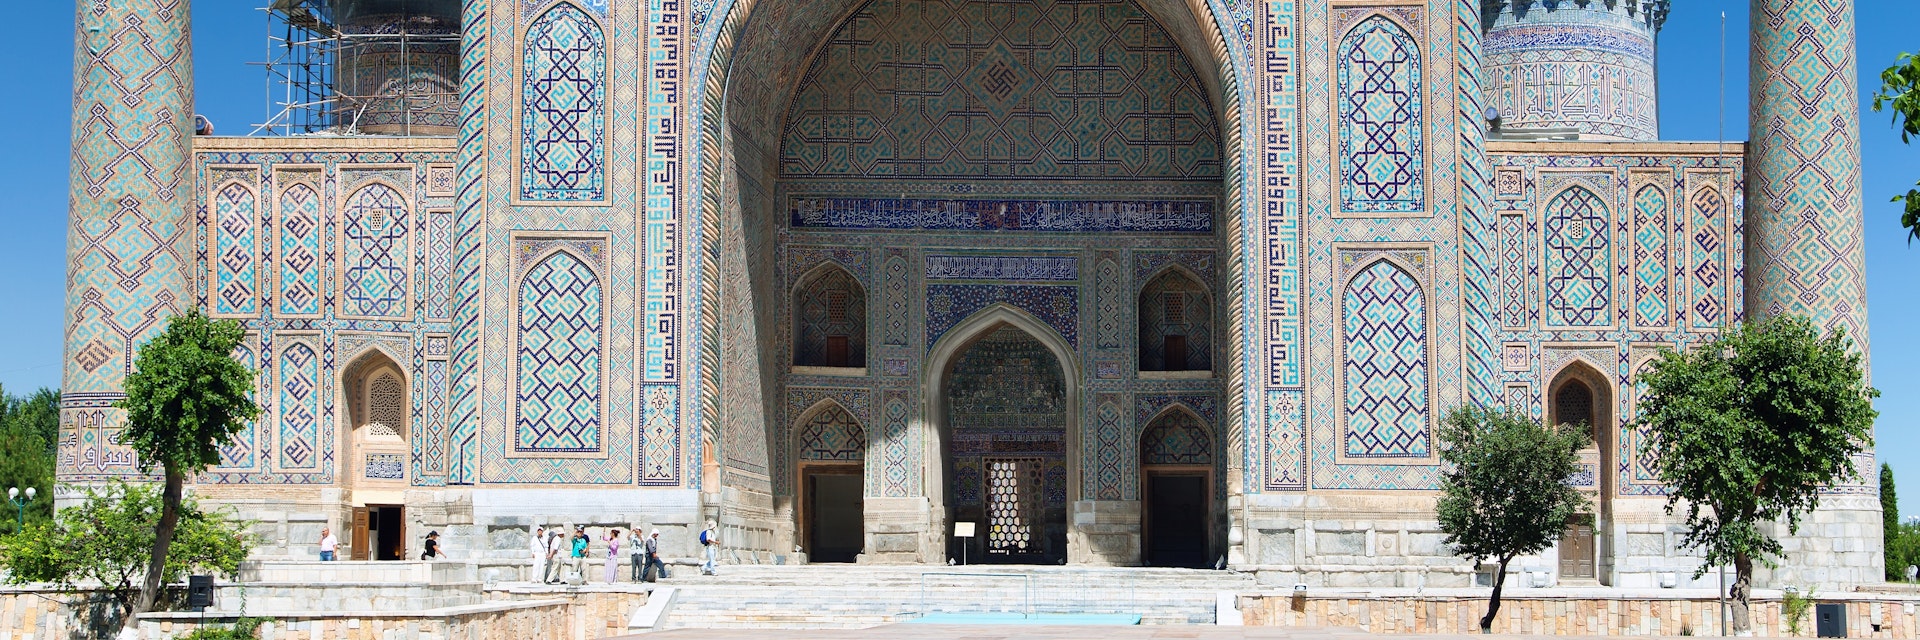 View of Sher Dor Medressa - Registan - Samarkand - Uzbekistan; Shutterstock ID 189546986; purchase_order: 65050; job: ; client: ; other:
189546986